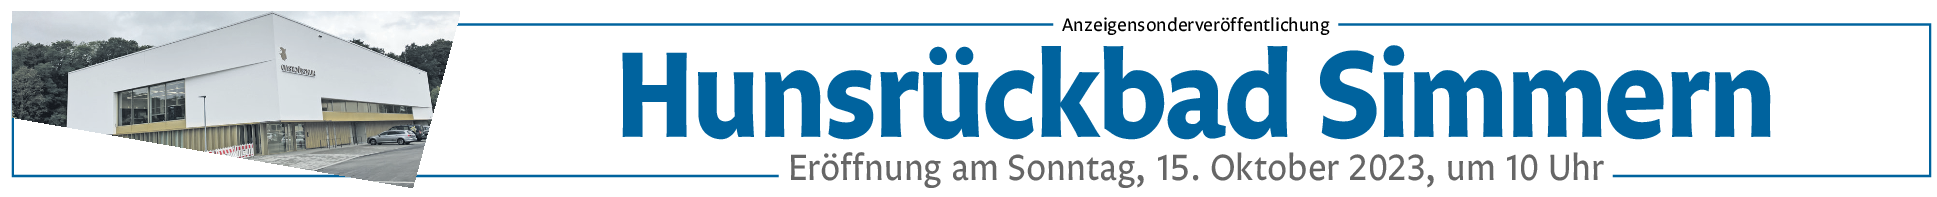 Hunsrückbad in Simmern: Wasserfreunde aufgepasst